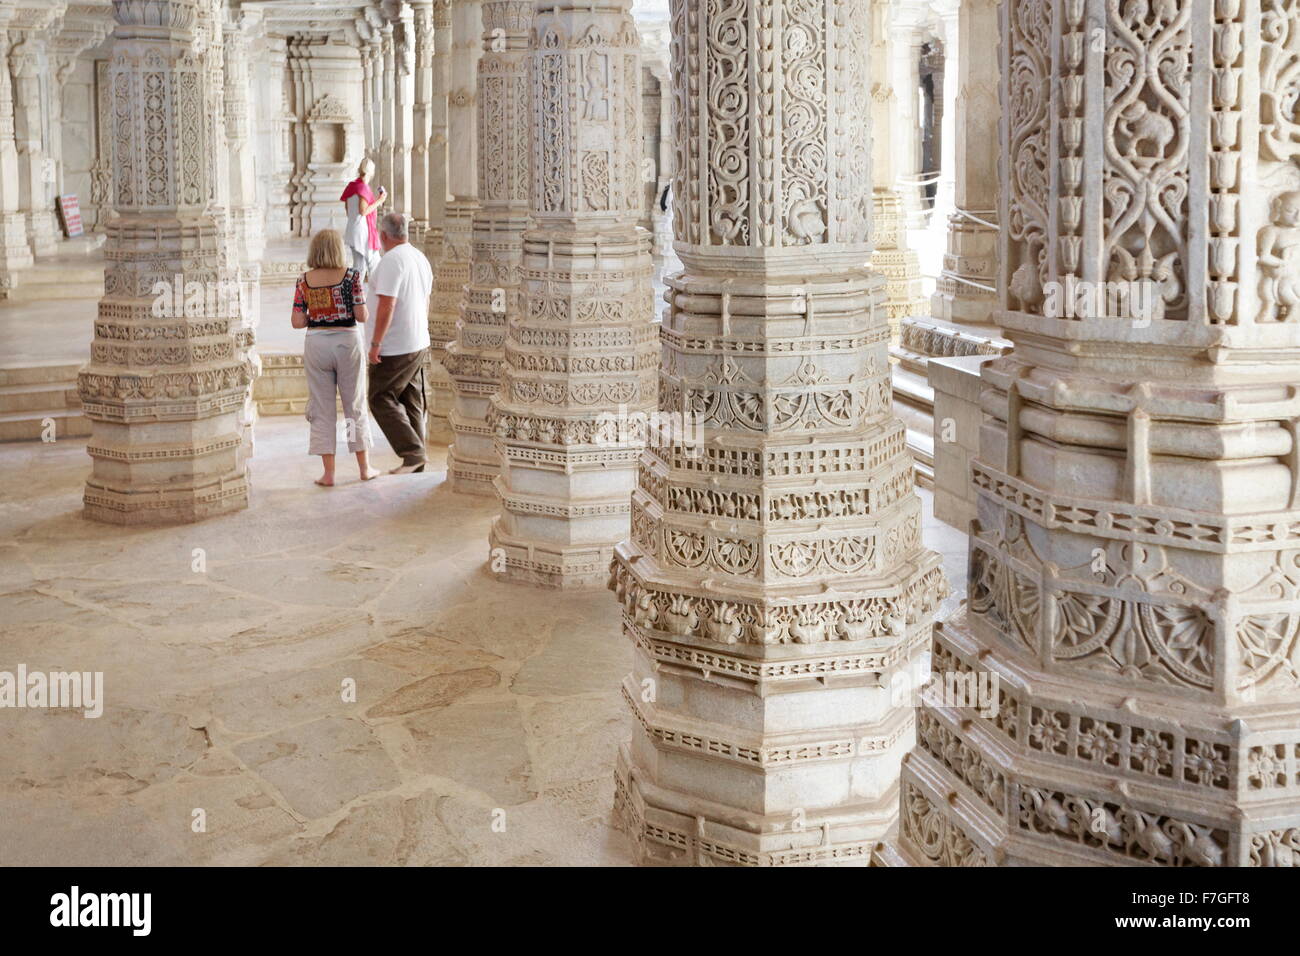 Piliers de marbre blanc sculpté dans le temple de Jain (connu également comme en Jain temple), Ranakpur, Rajasthan, Inde Banque D'Images